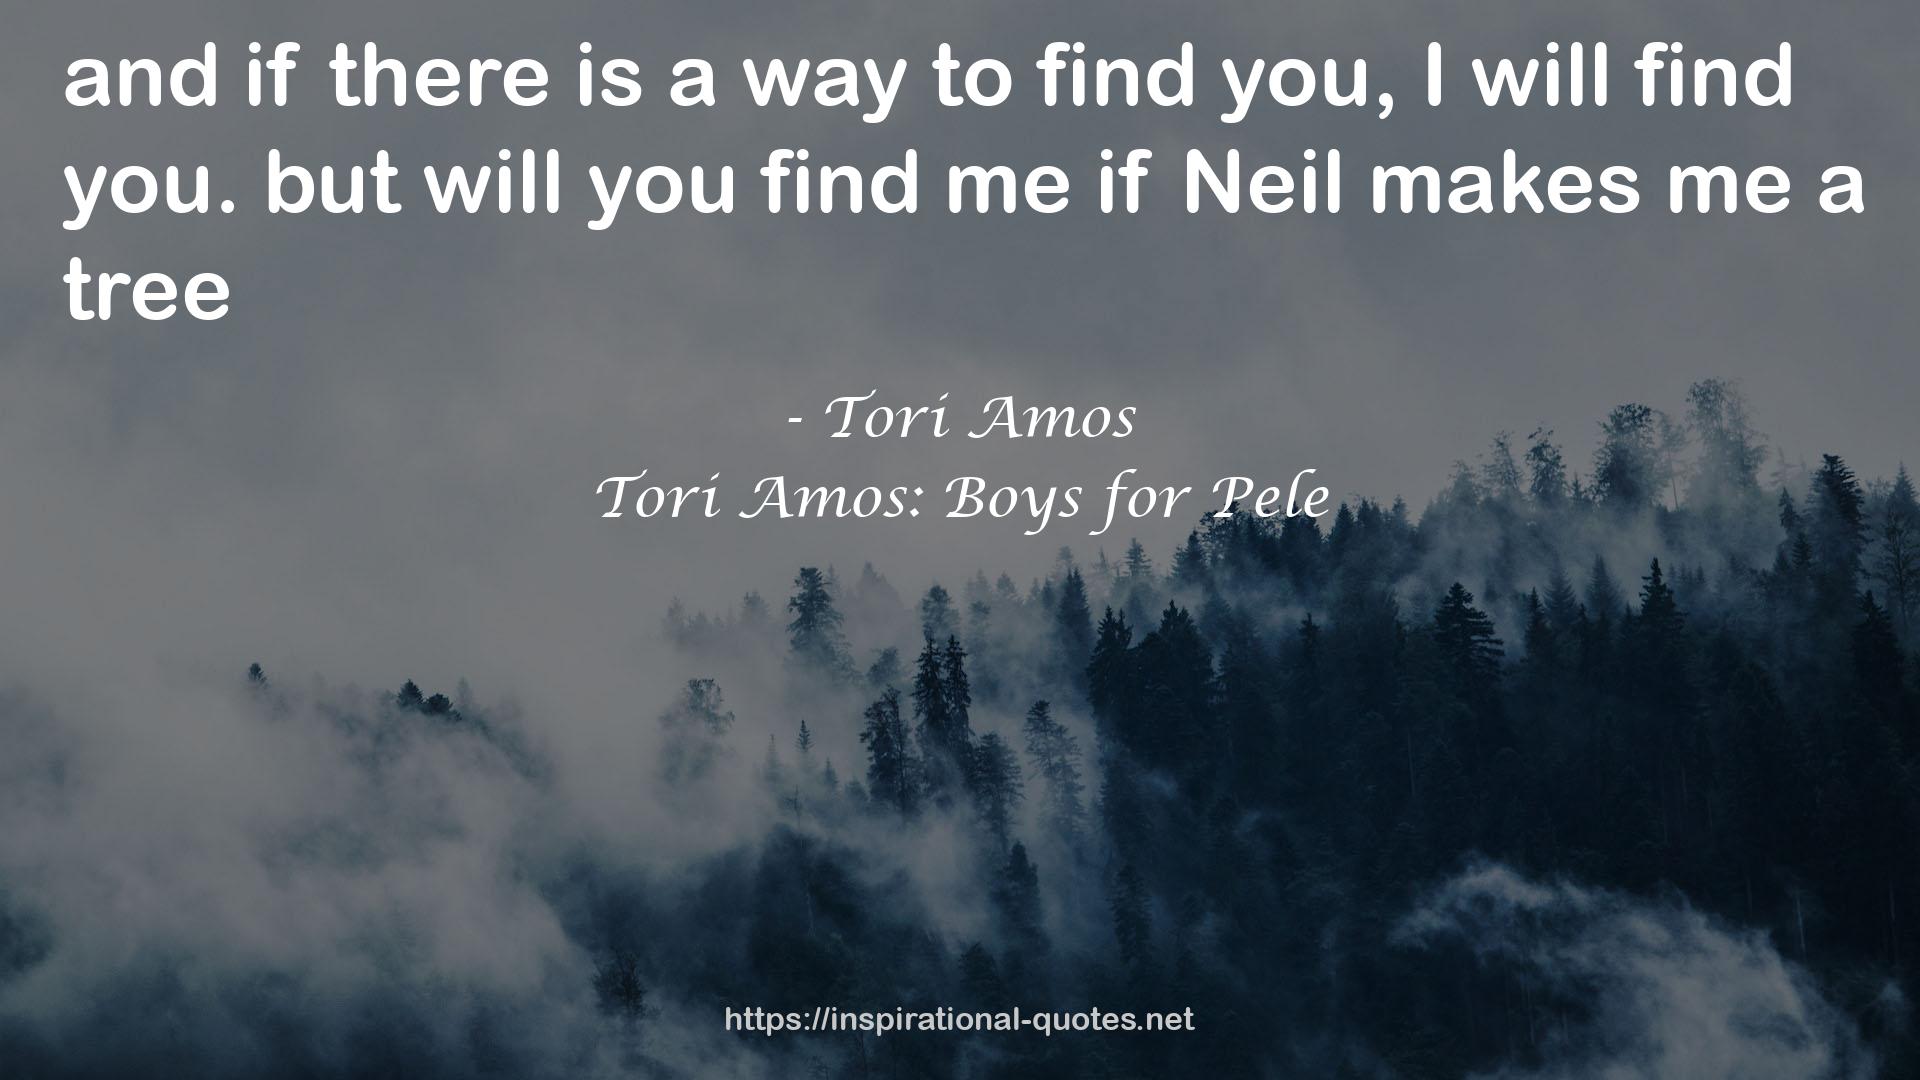 Tori Amos: Boys for Pele QUOTES